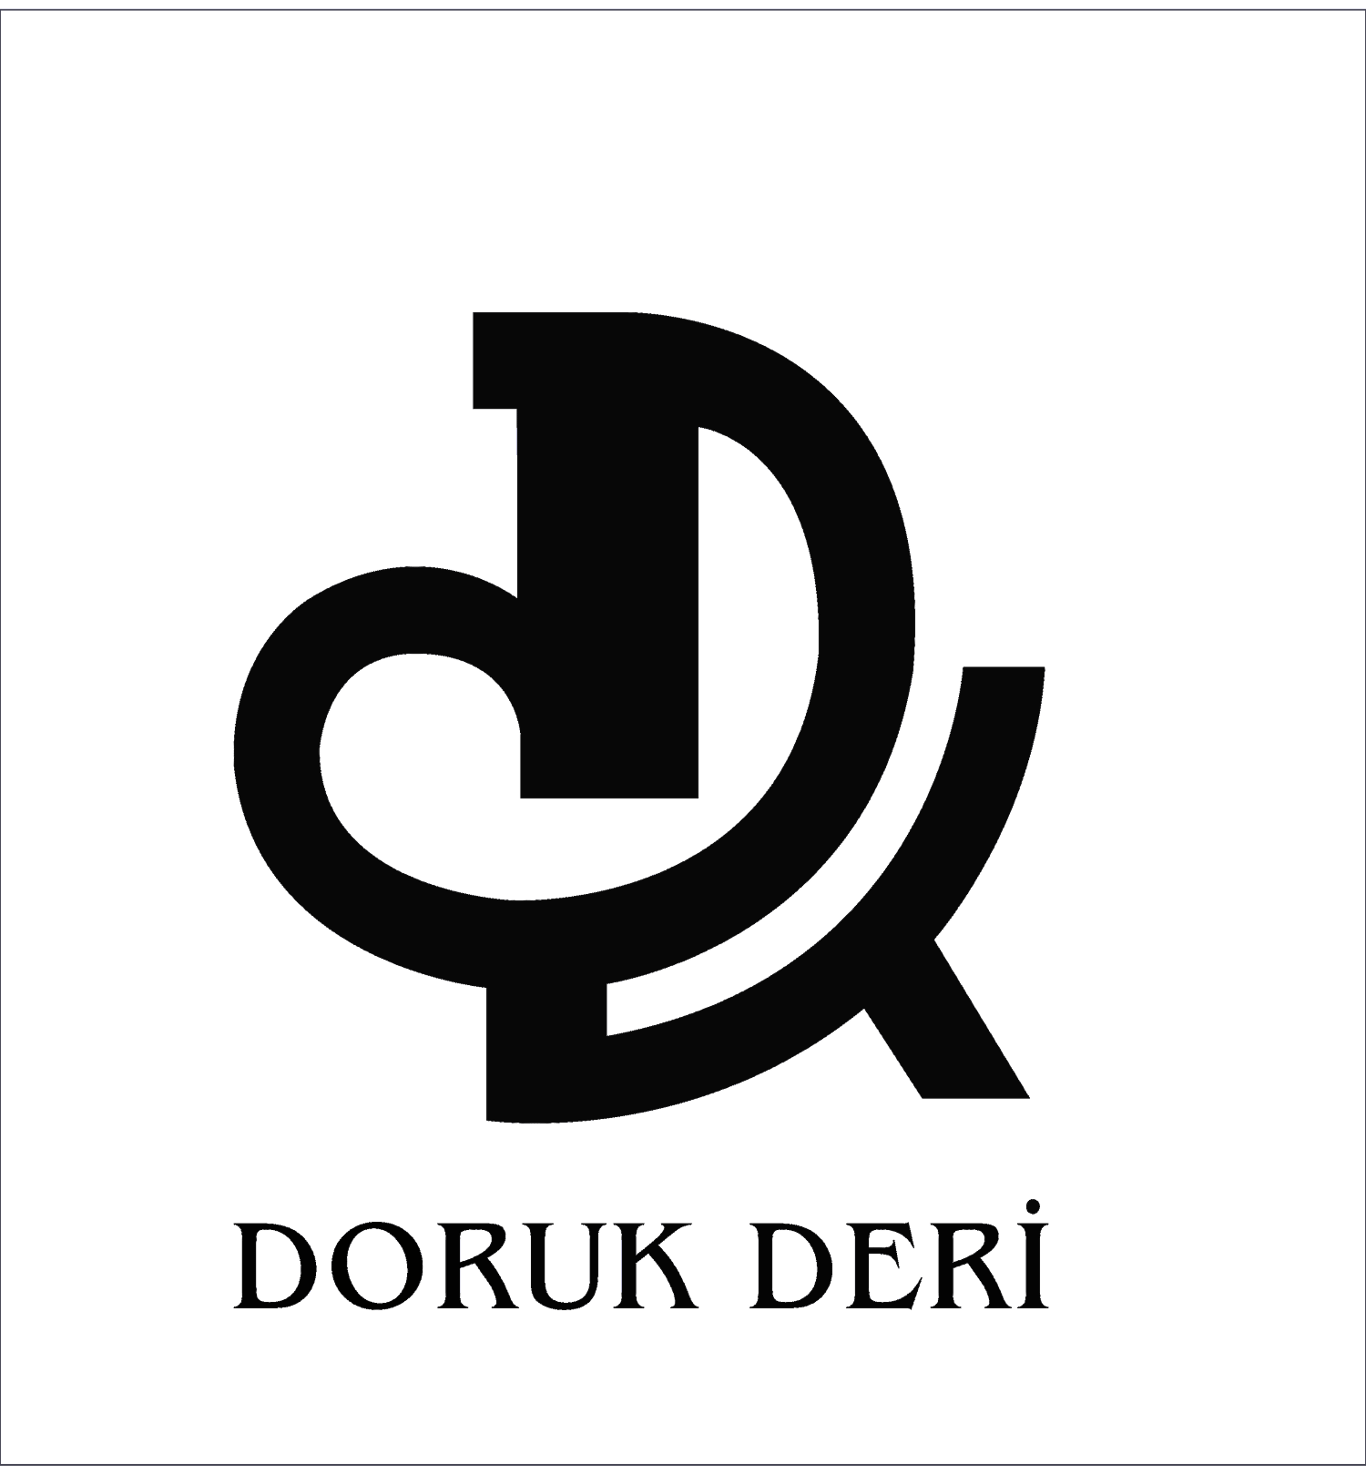 DORUK DERİ